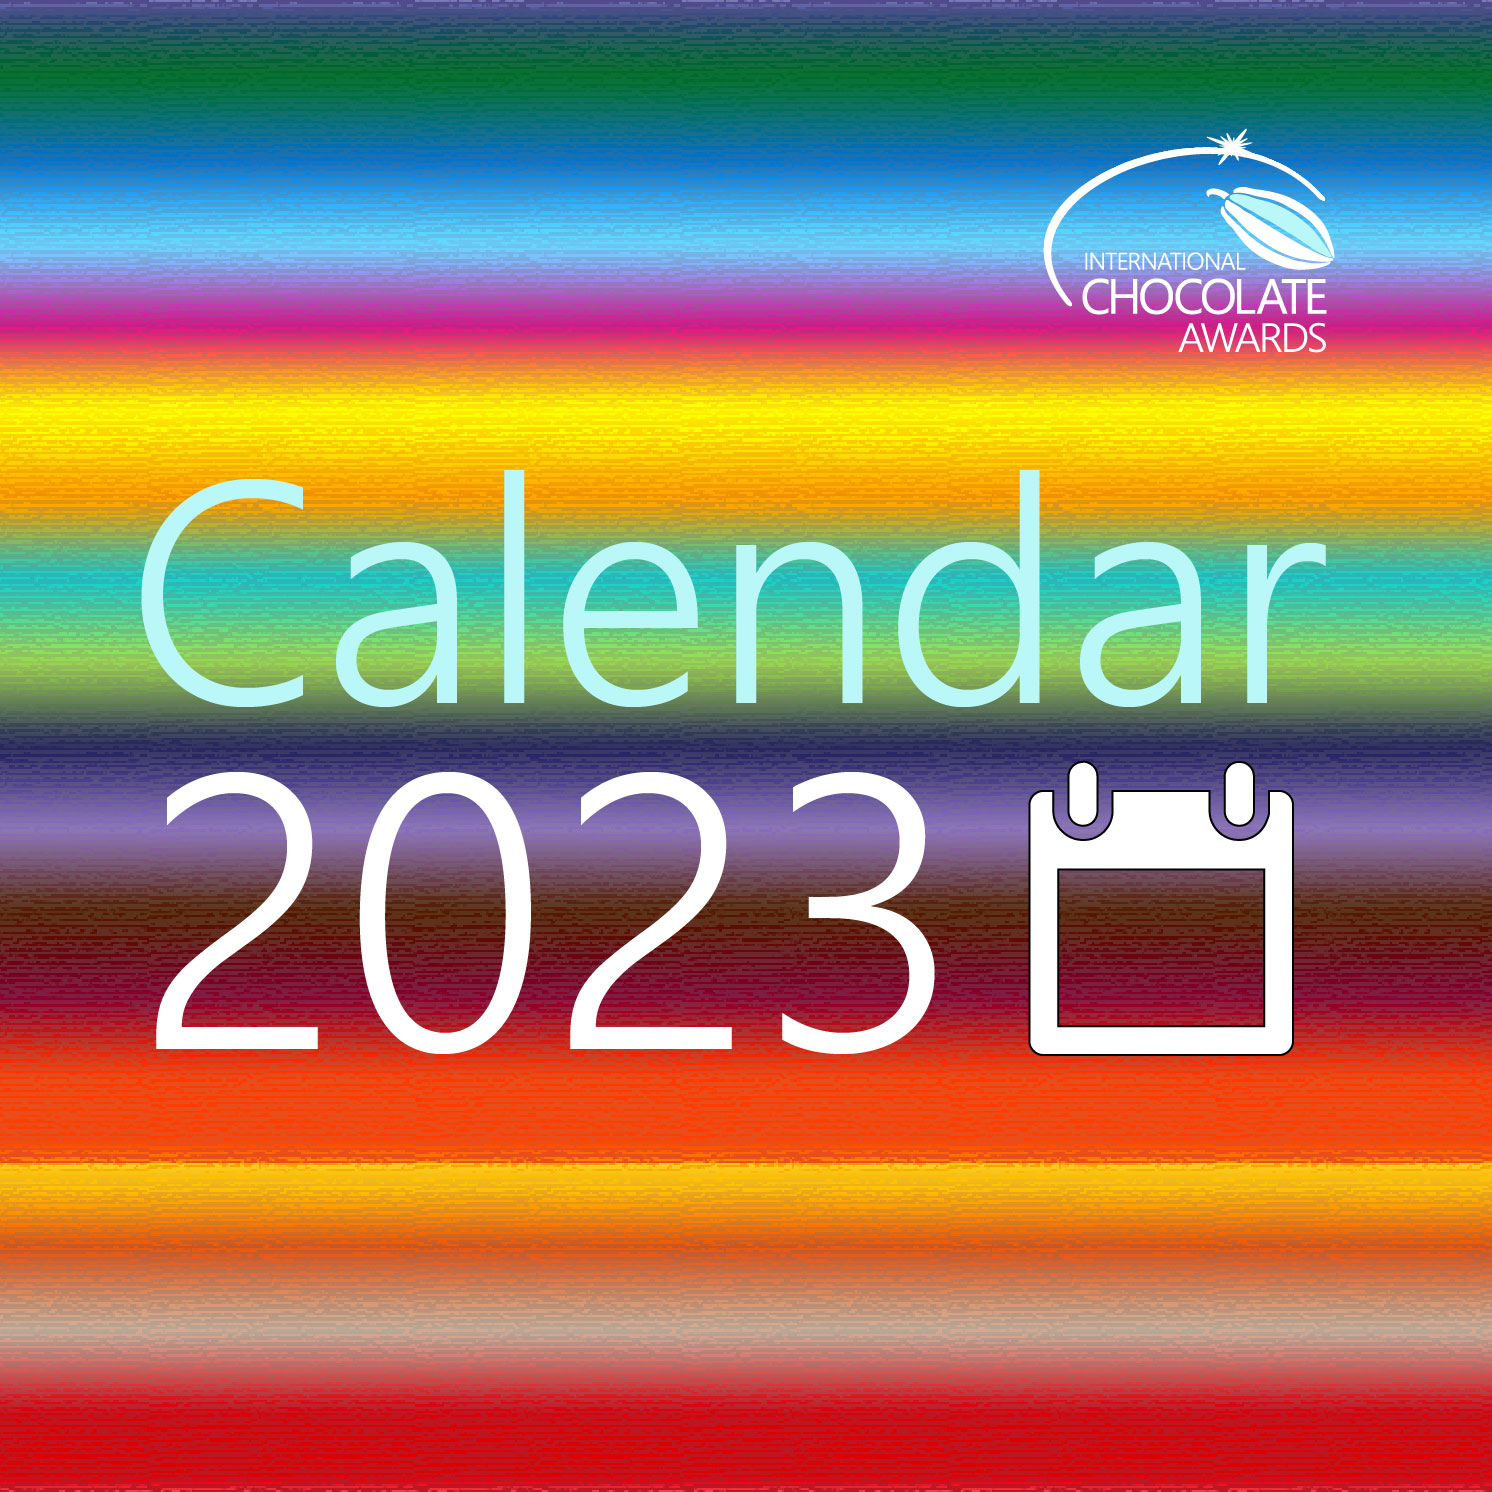 featured image calendar 2023